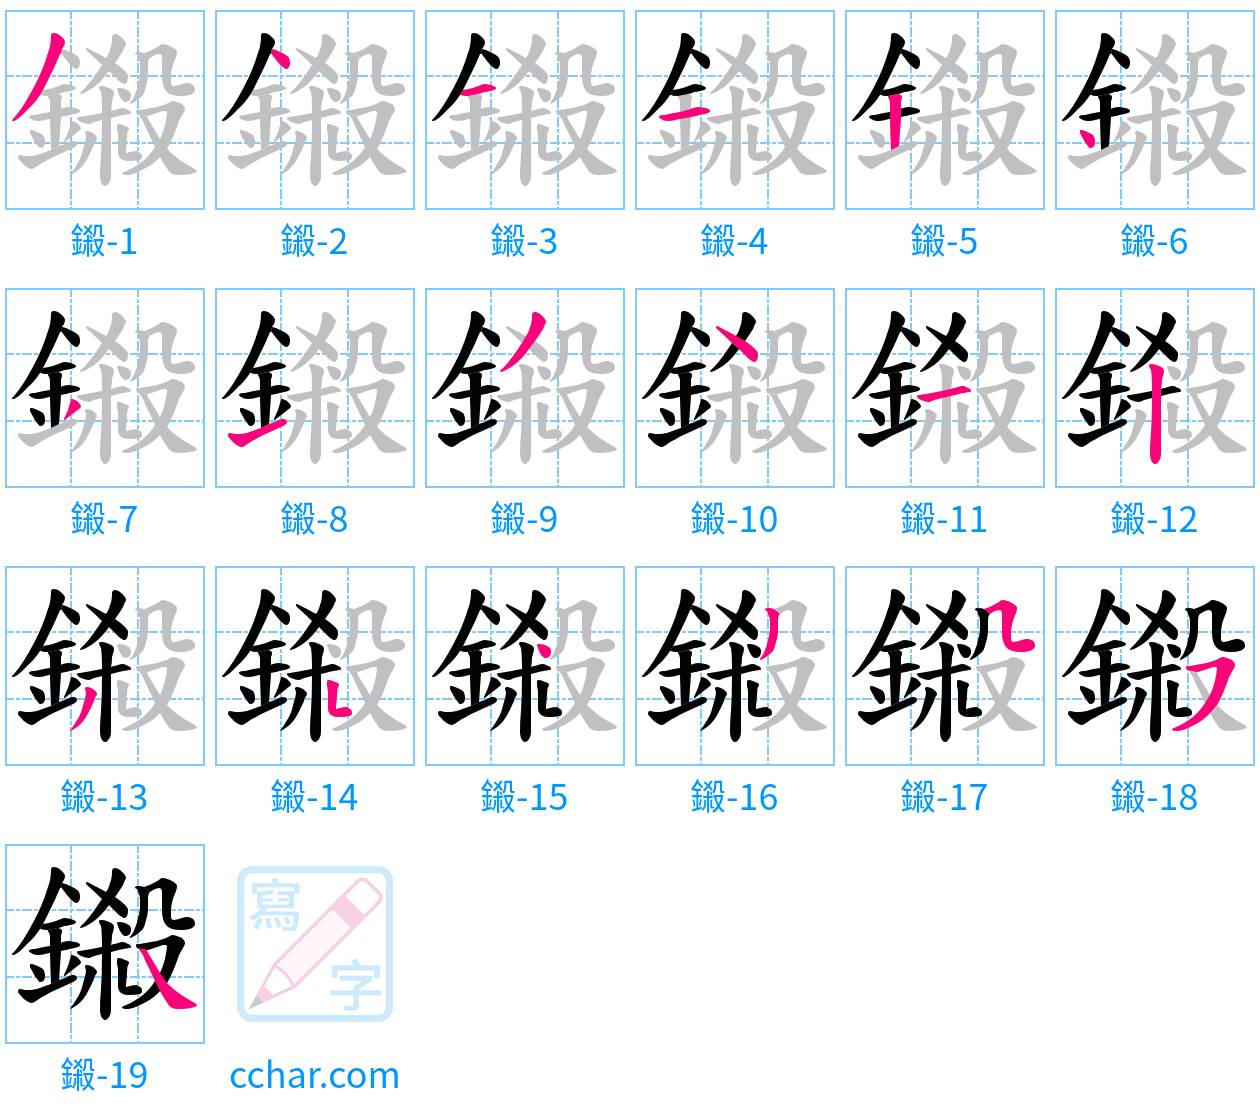 鎩 stroke order step-by-step diagram